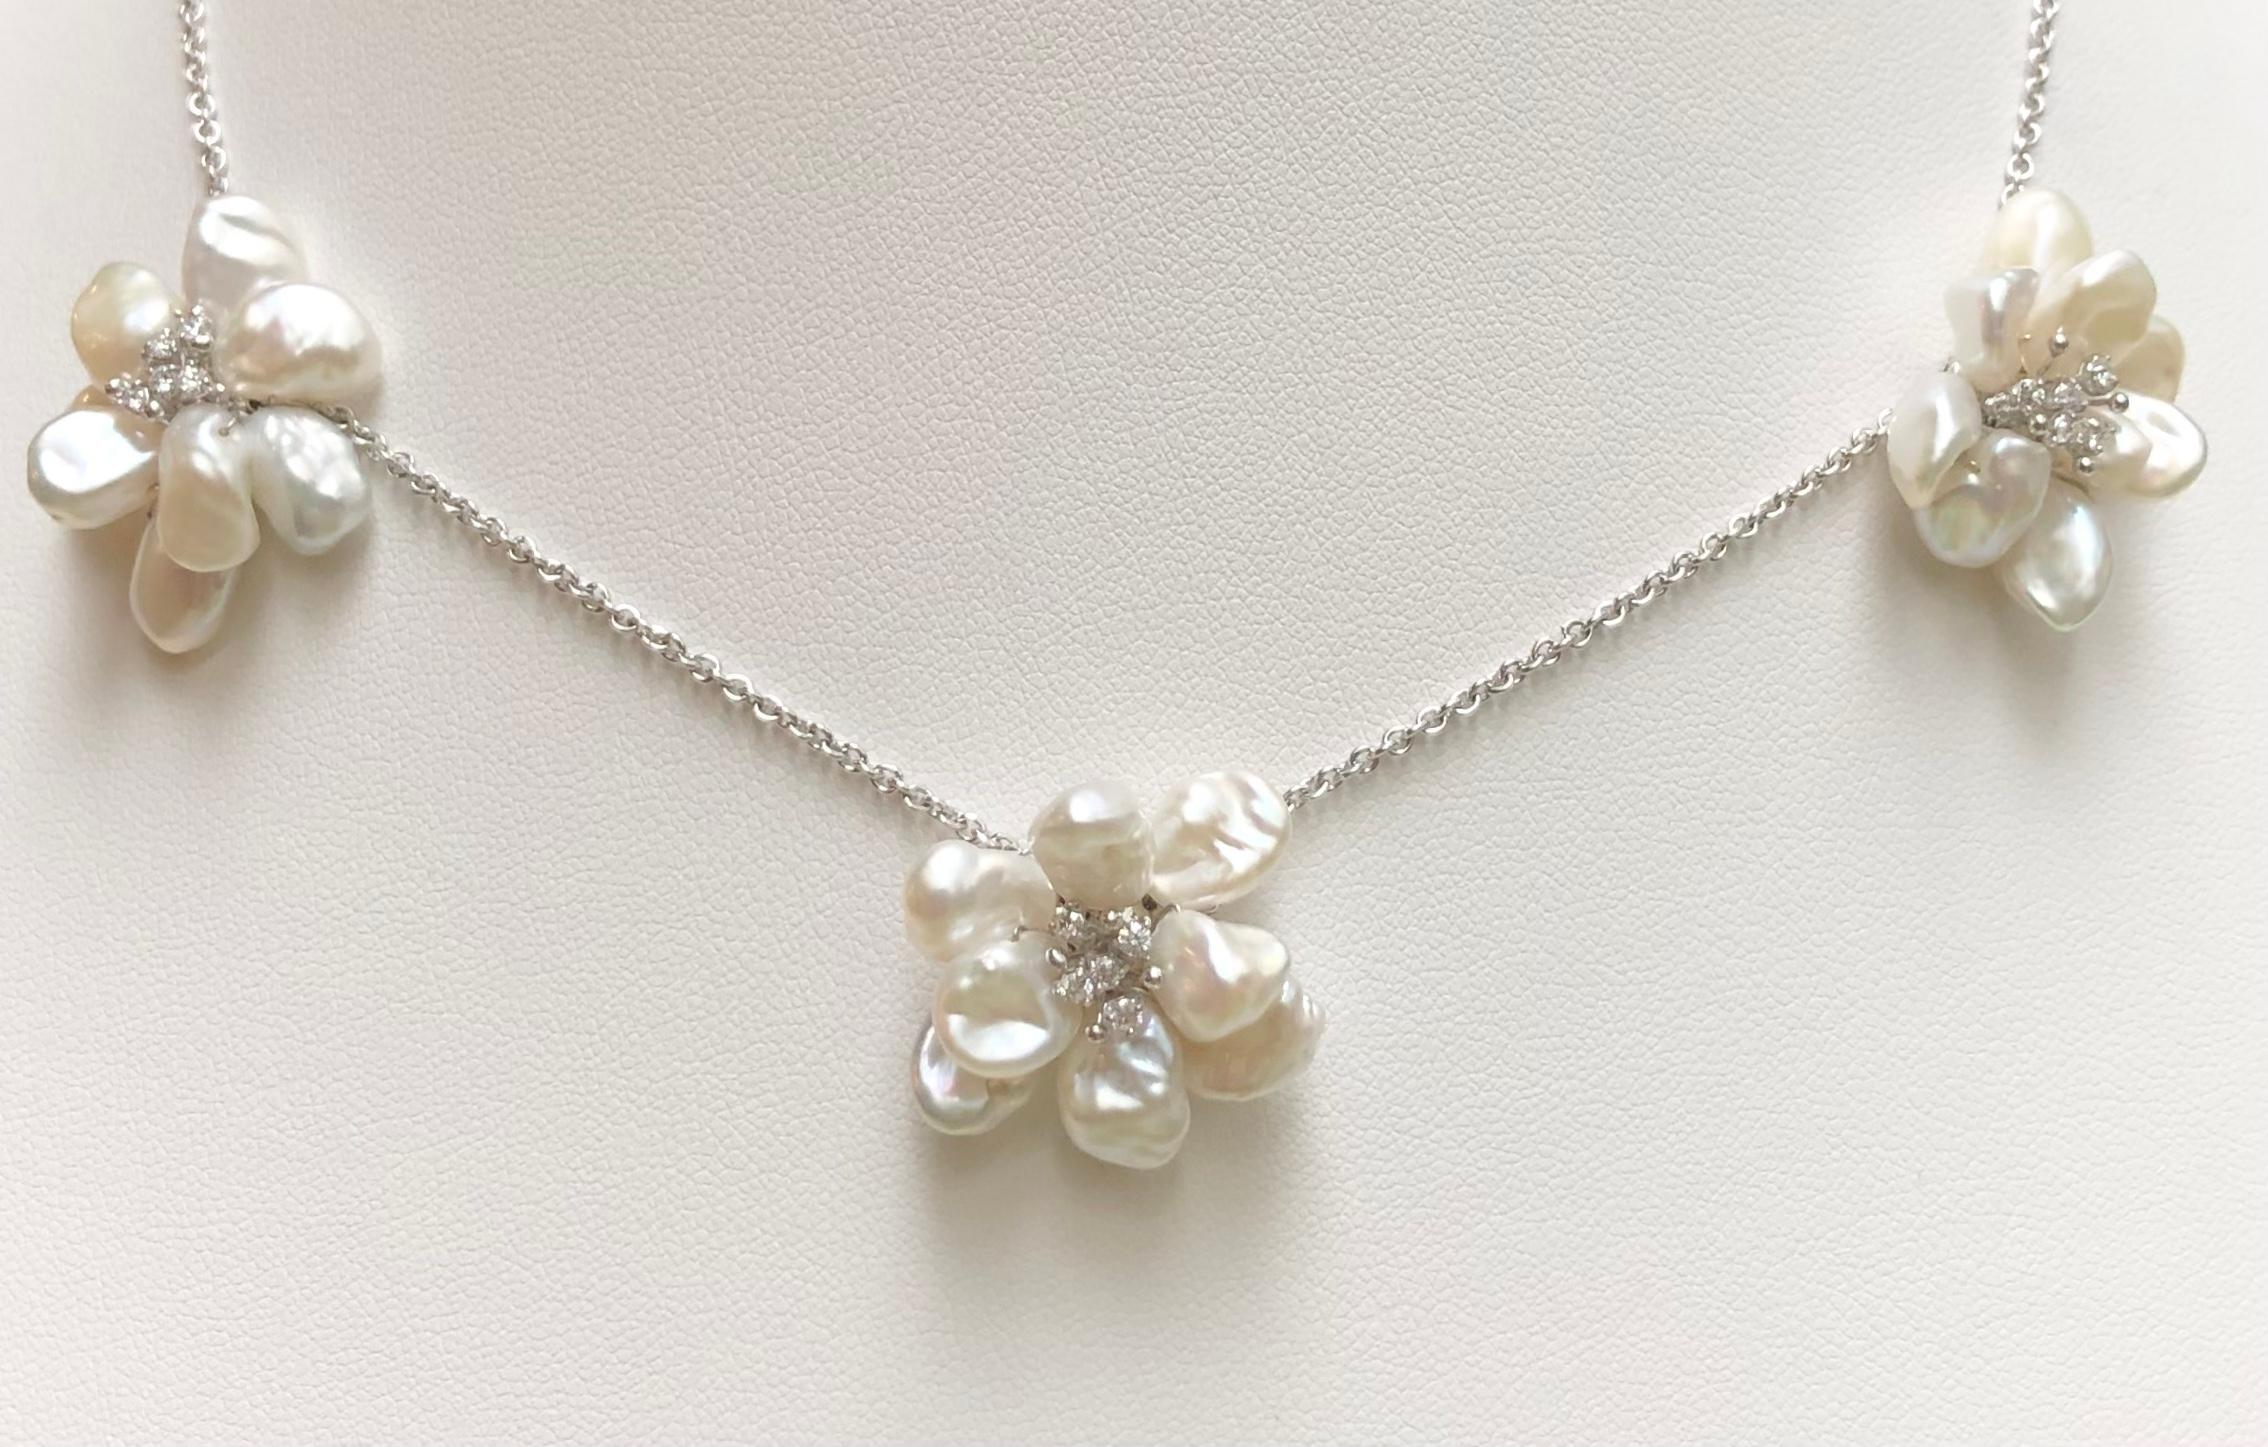 Perle mit Diamant 0,35 Karat Halskette in 18 Karat Weißgold Fassung

Breite:  2.6 cm 
Länge:  41.0 cm
Gesamtgewicht: 21,92 Gramm

